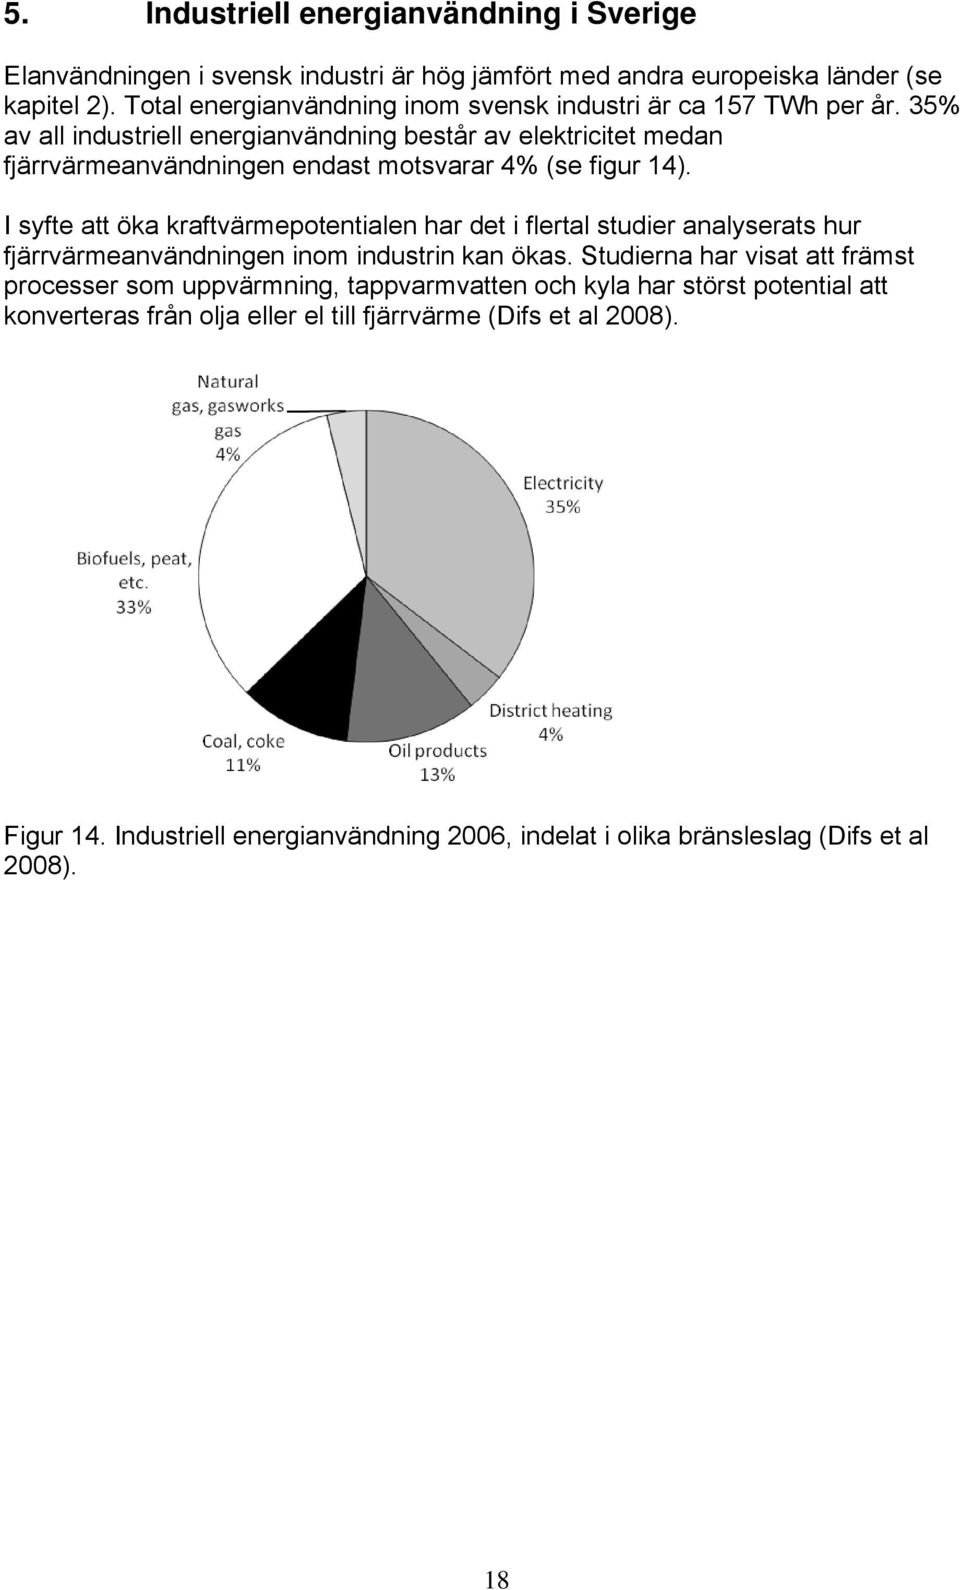 35% av all industriell energianvändning består av elektricitet medan fjärrvärmeanvändningen endast motsvarar 4% (se figur 14).